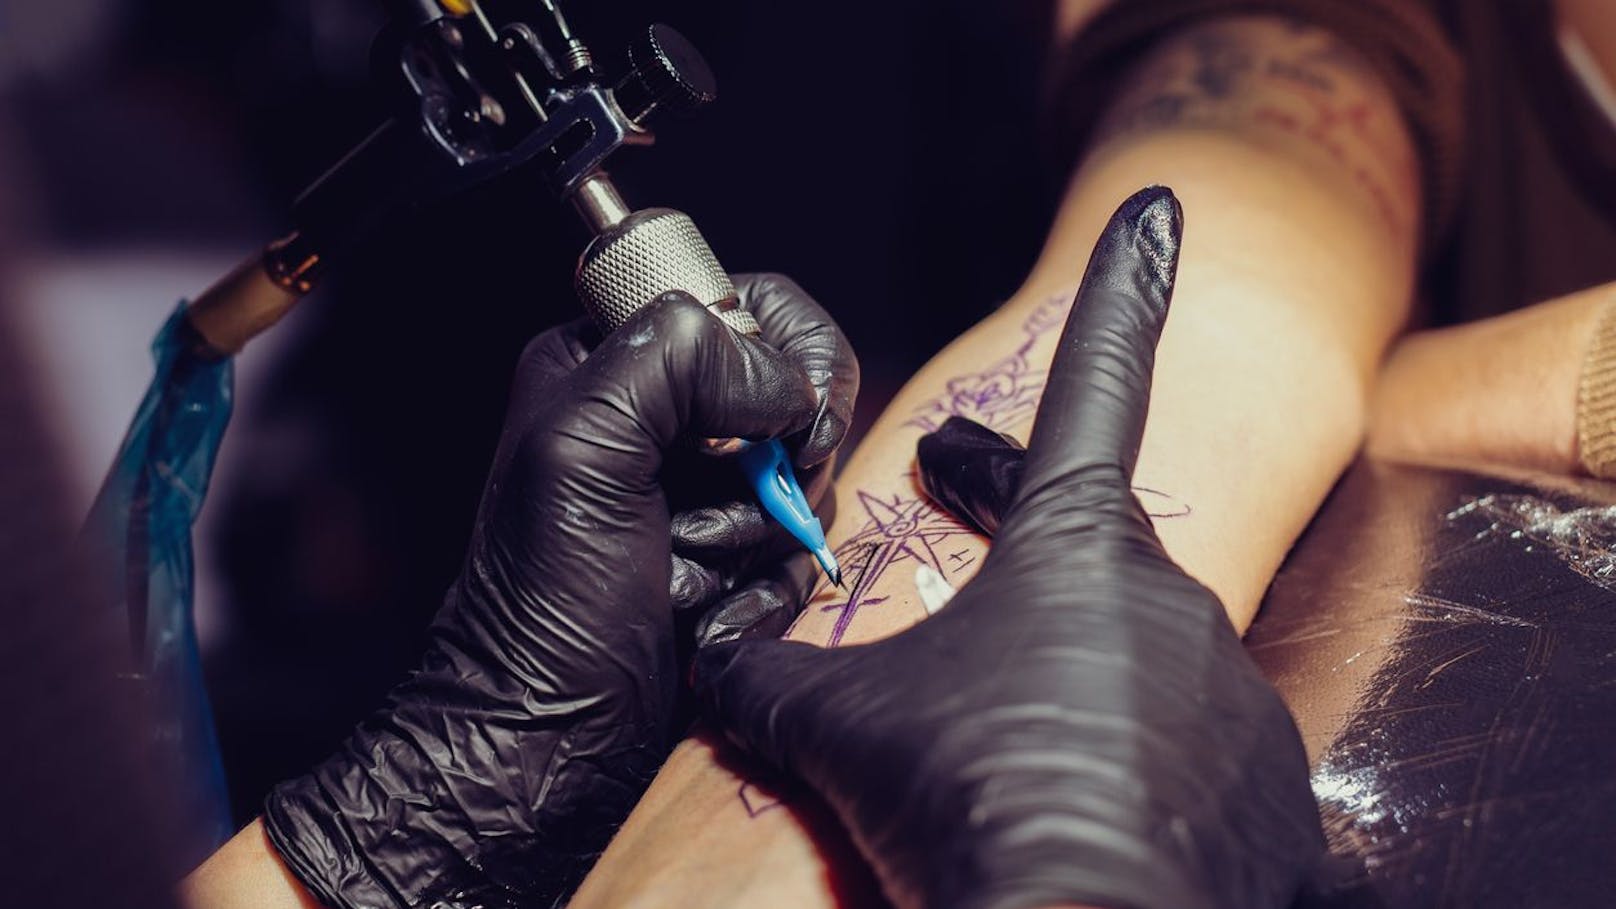 Tätowierer warnen: "Lasst dieses Tattoo nie machen"